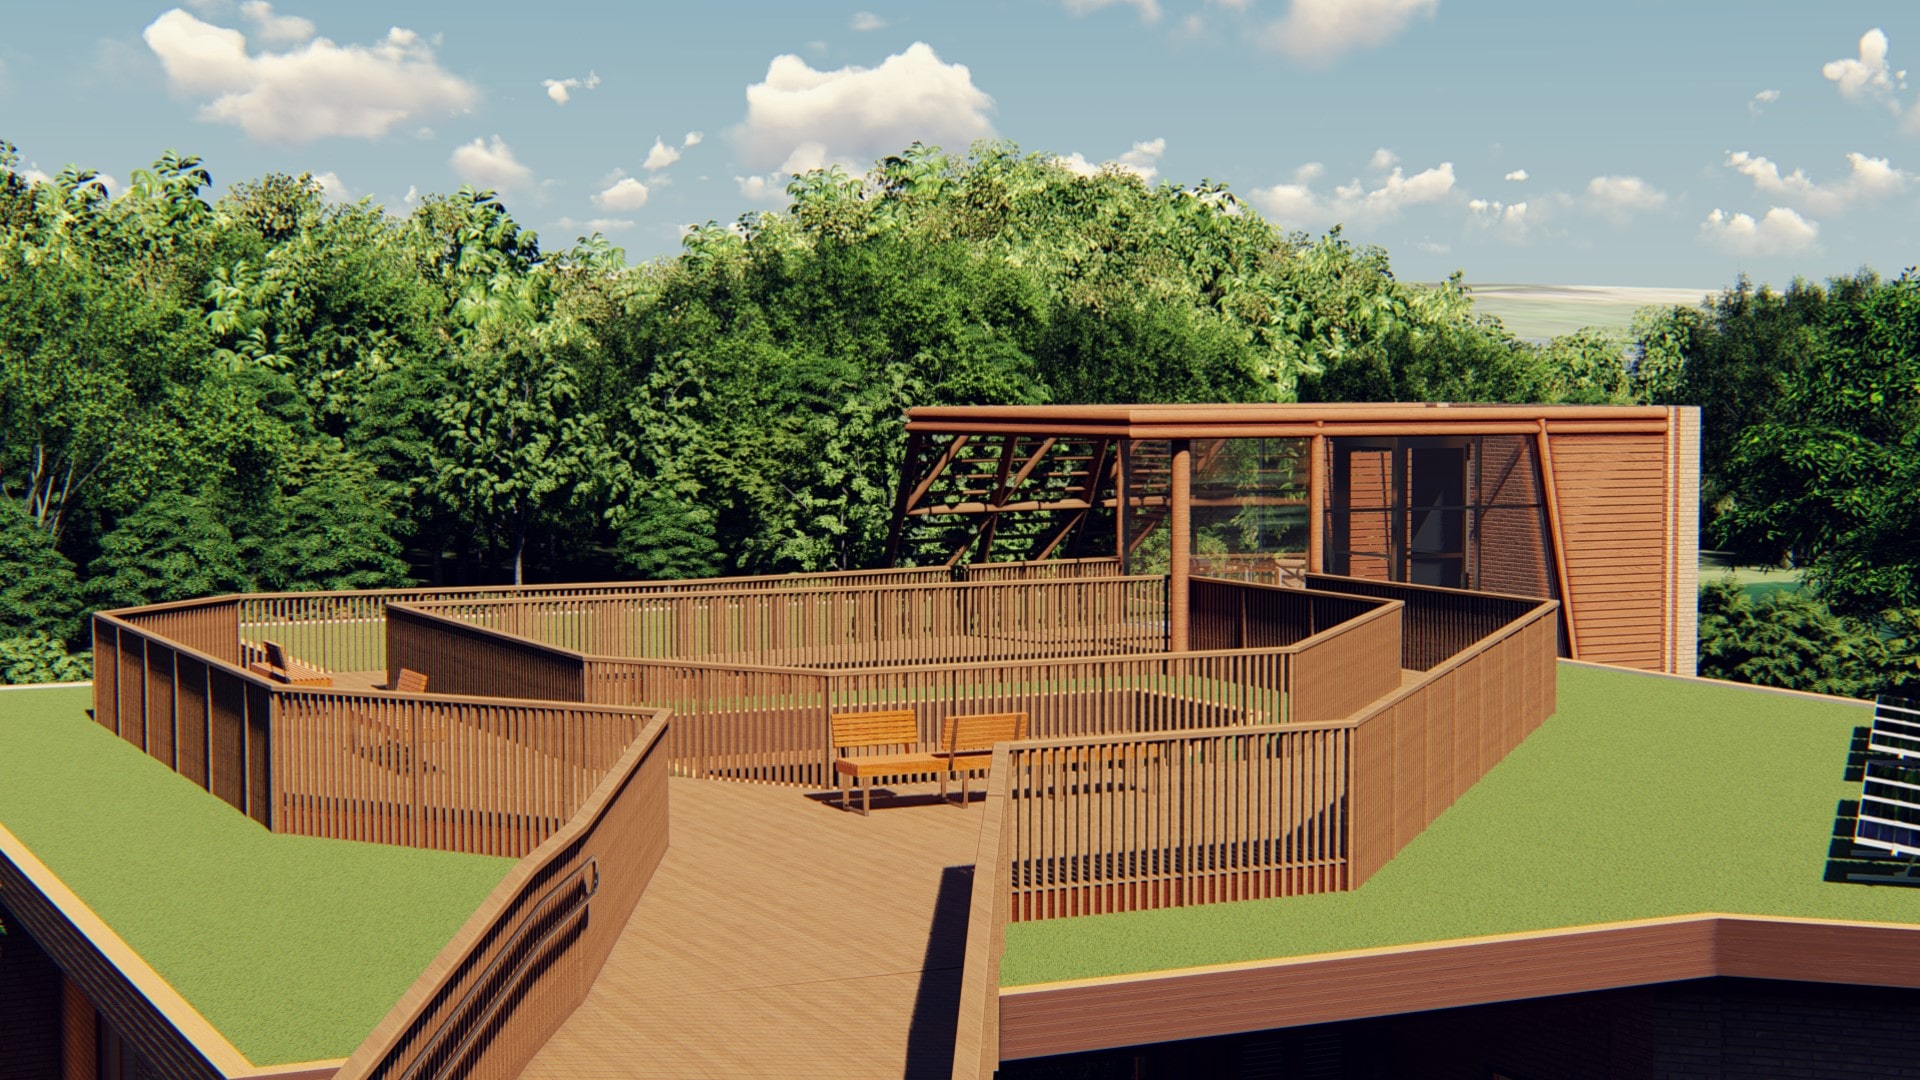 Projeção 3D da cobertura do parque. A área é cercada por  grades de madeira e possui bancos e gramado.